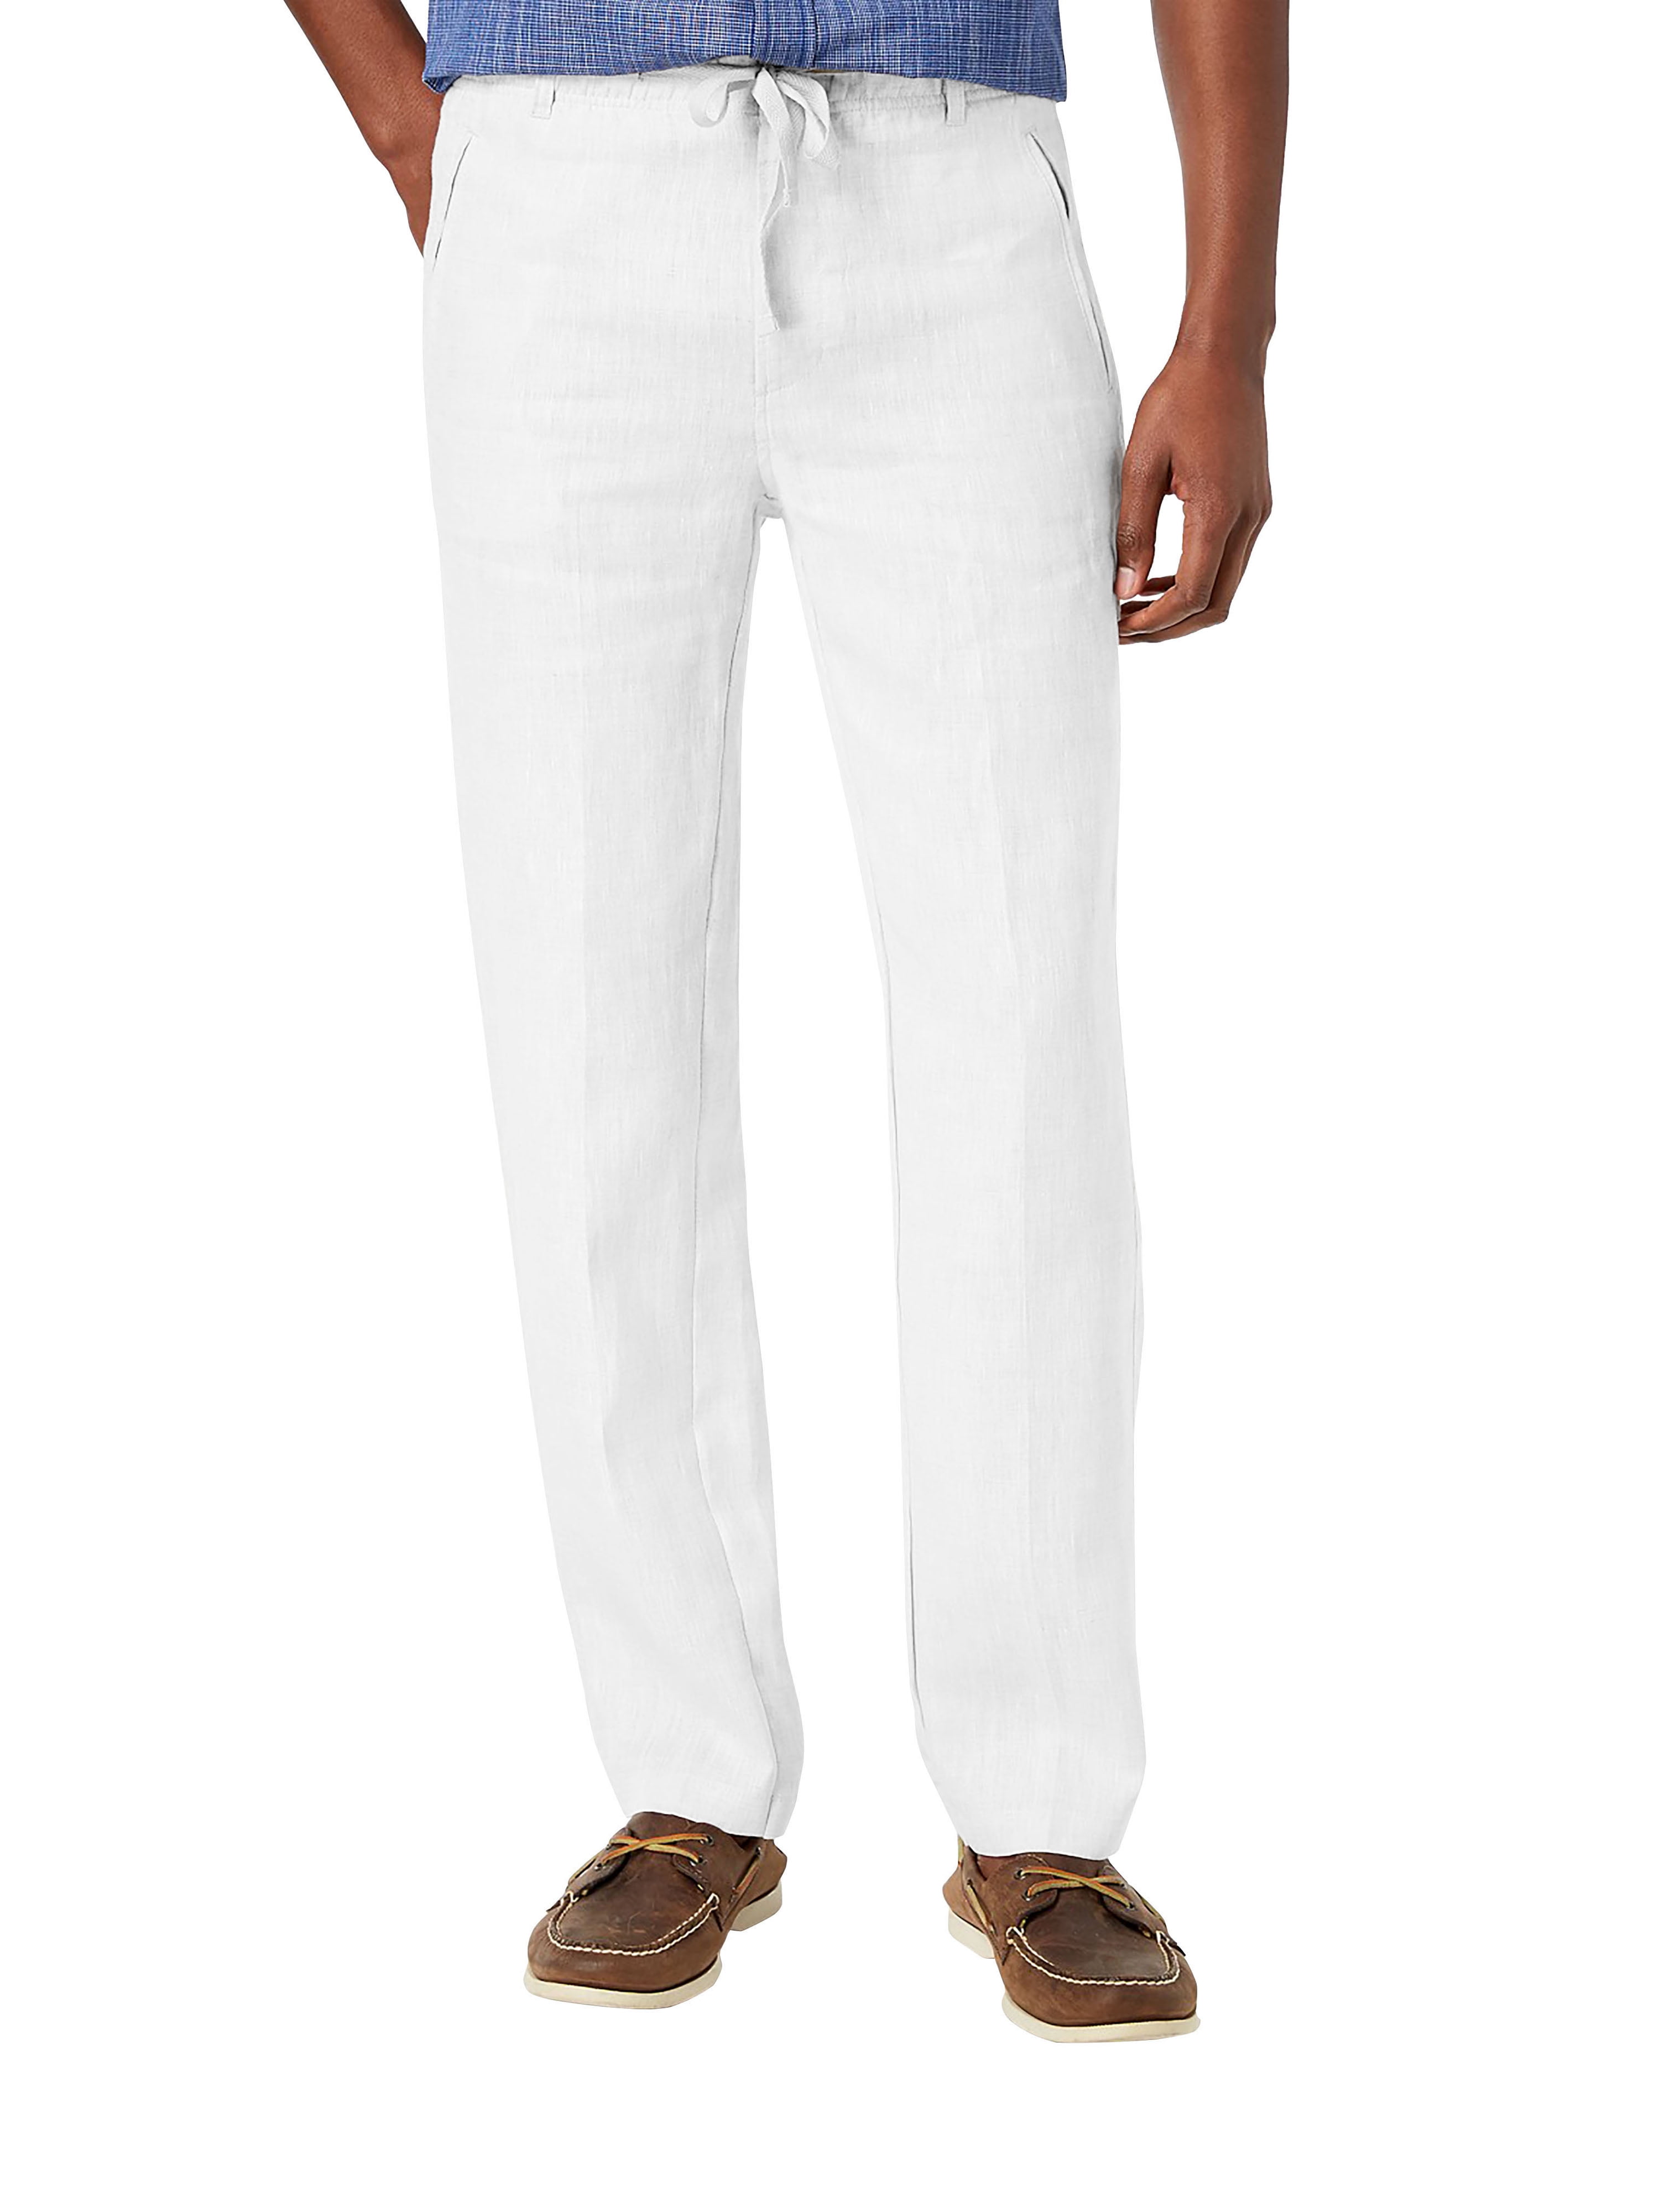 Ma Croix Mens Premium Soft Linen Pants Wrinkle Resistant Flat Front ...